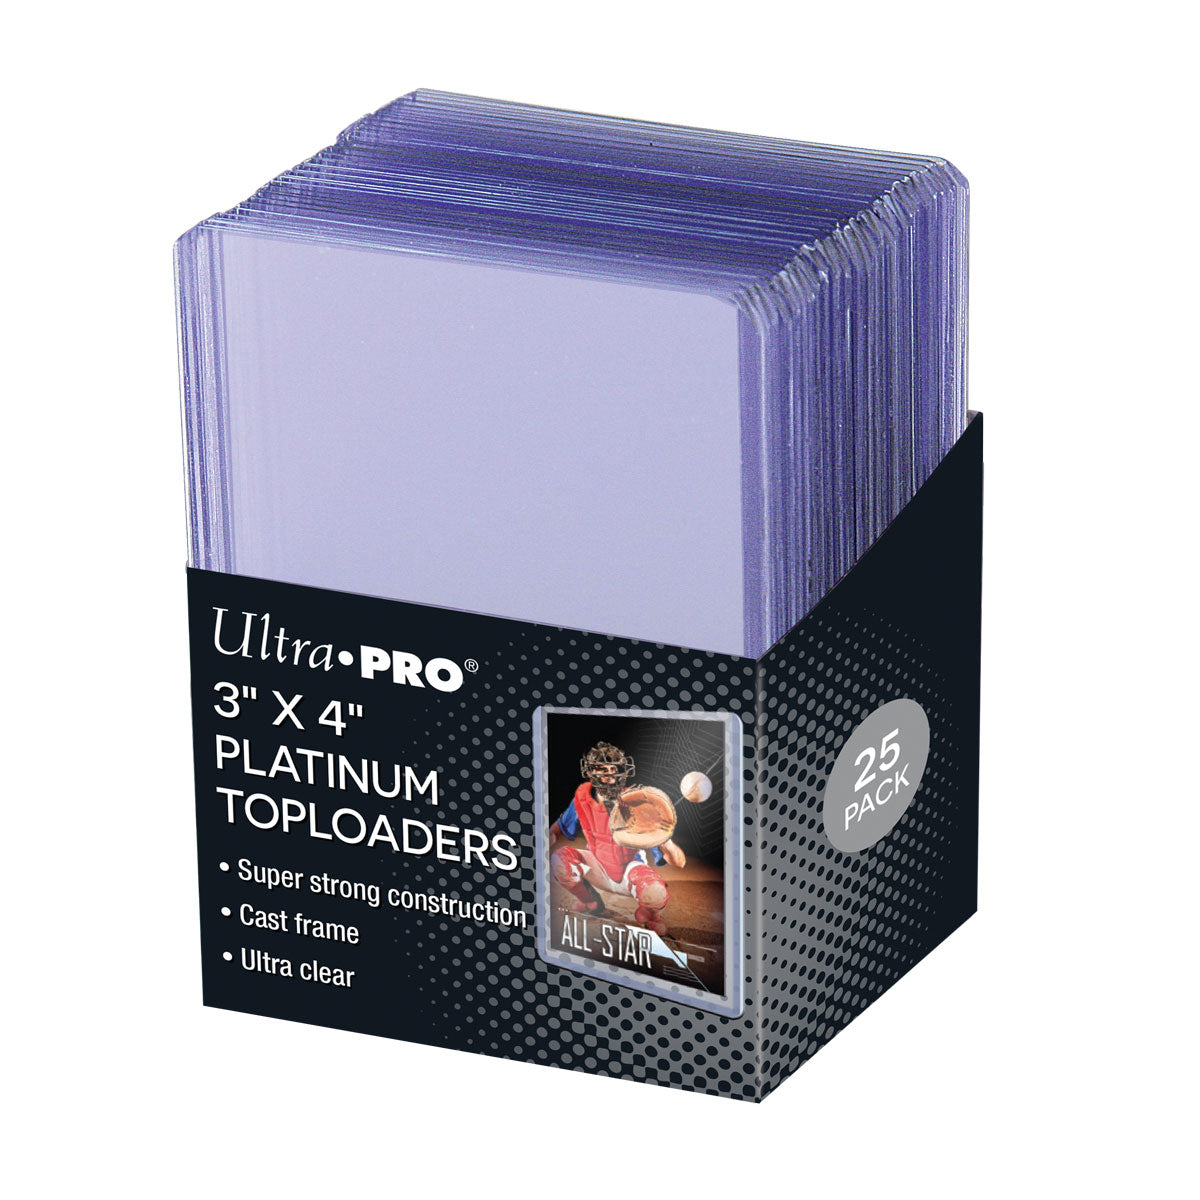 Ultra PRO: Platinum Toploader - 3